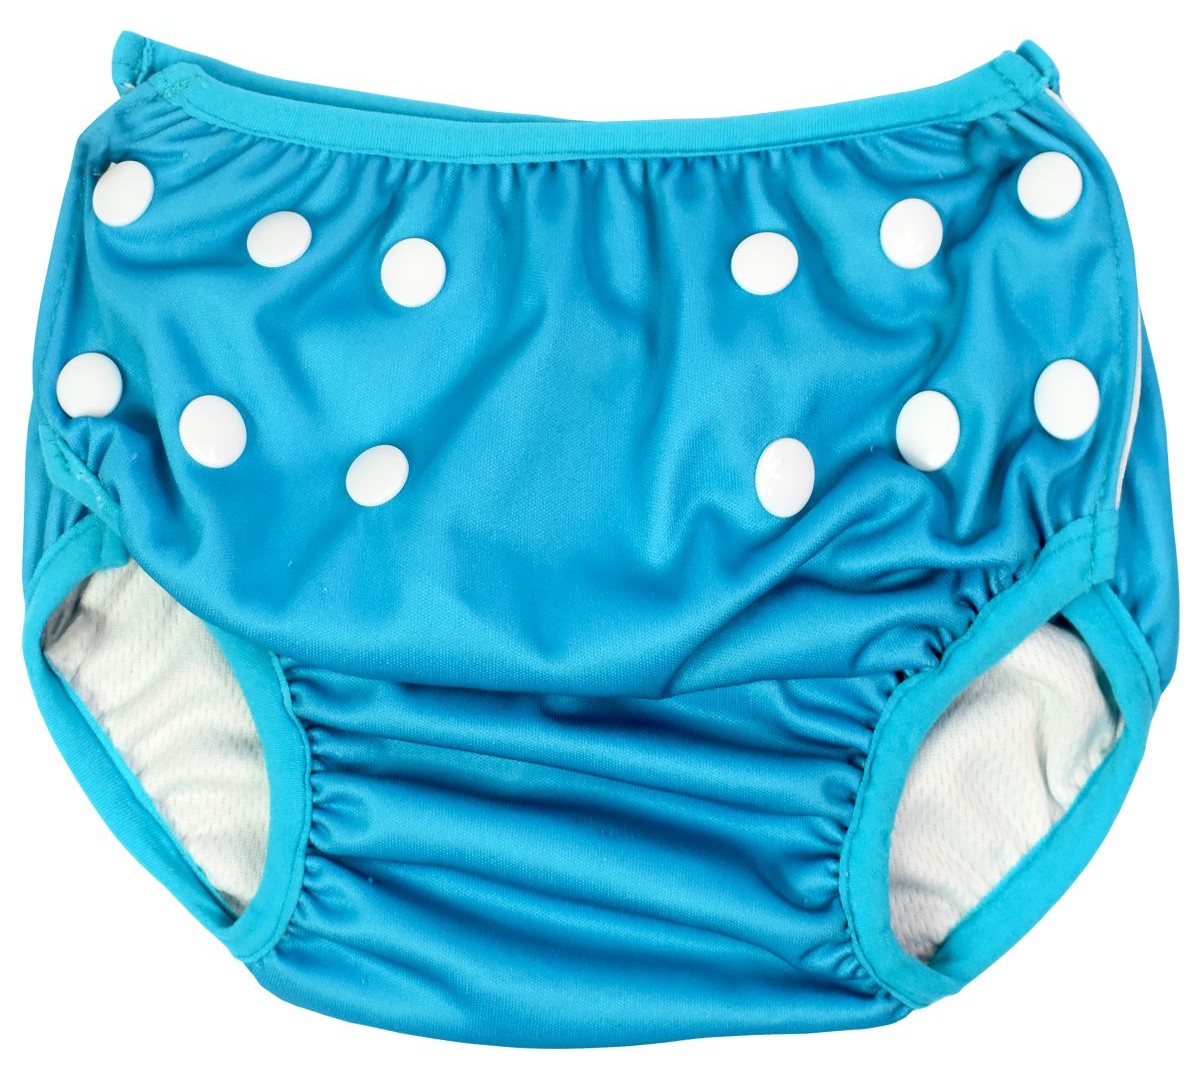 Splash About nastavitelné plenkové plavky Happy Nappy - modré, velikost: 1-3 roky